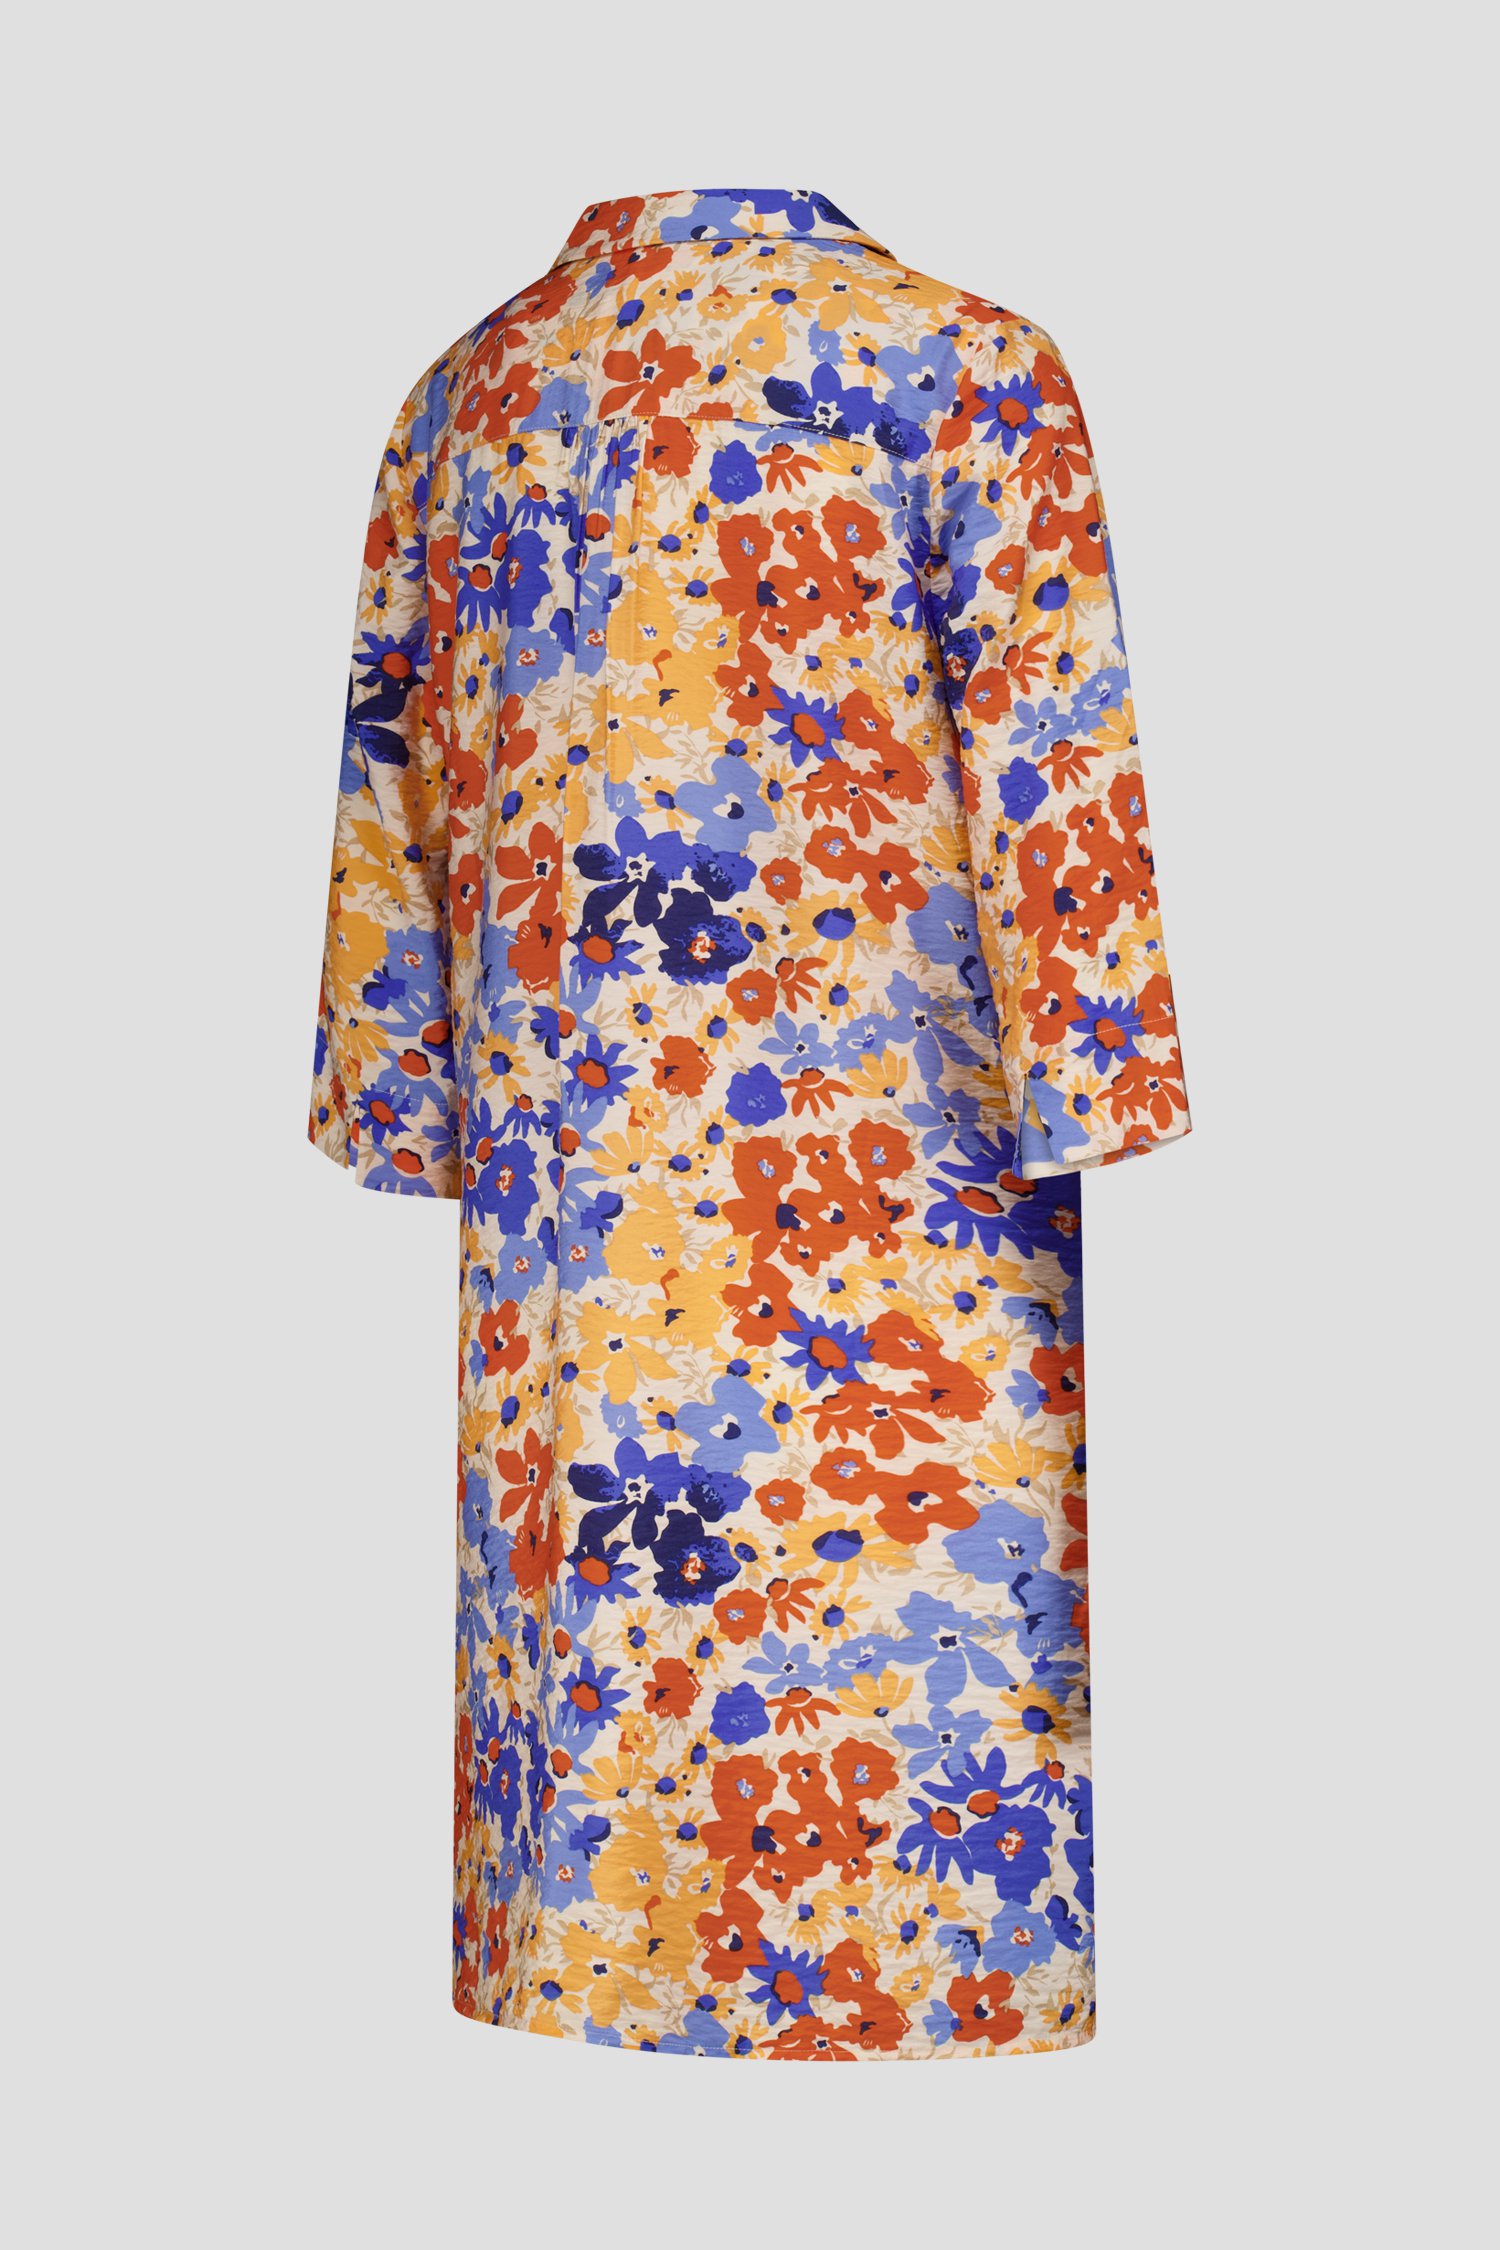 Robe colorée à motif floral de Liberty Loving nature pour Femmes